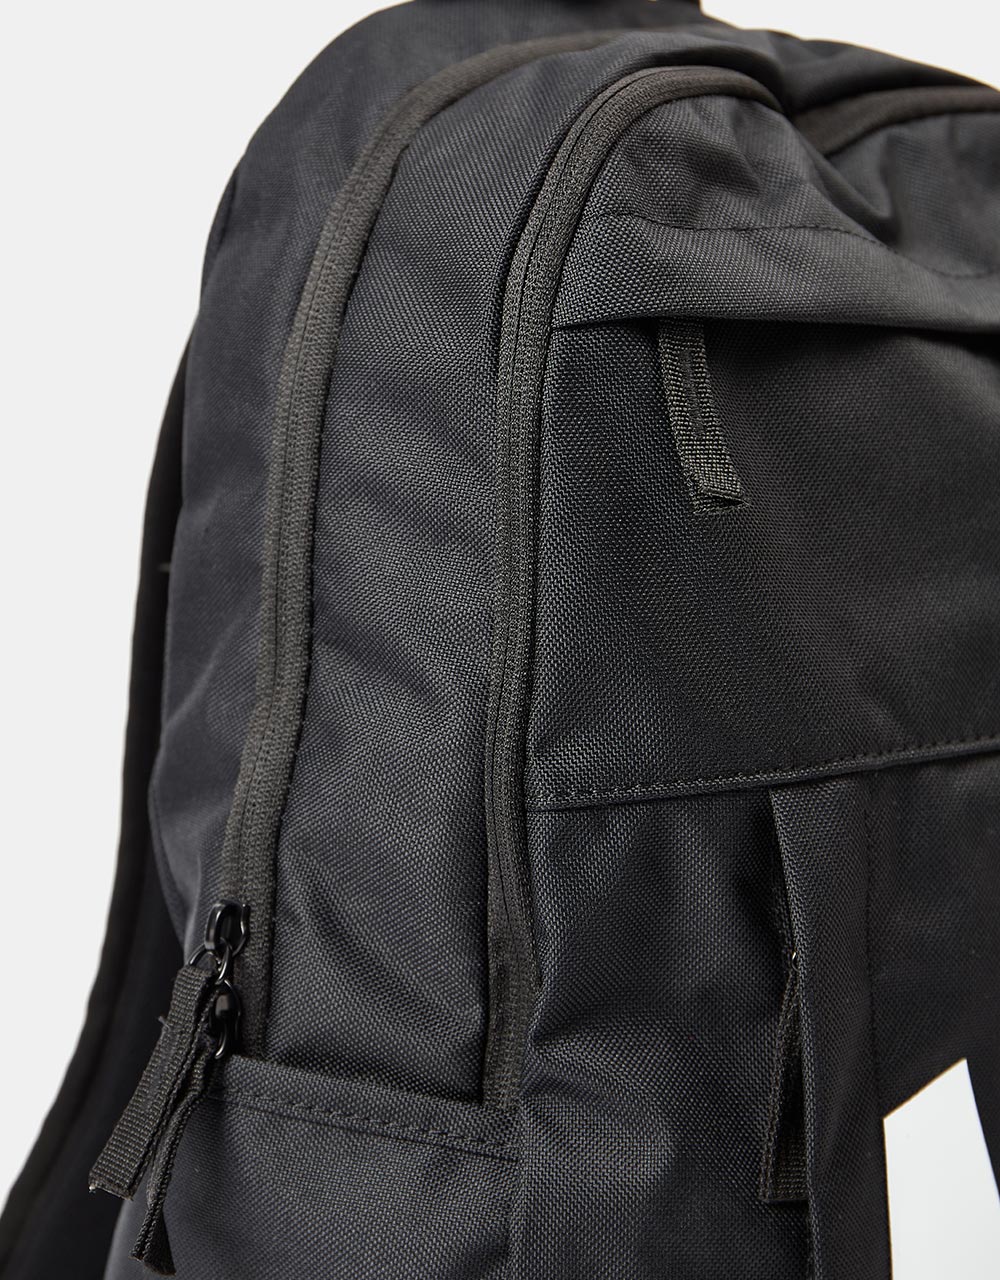 Nike Elemental Backpack - Black/Black/White